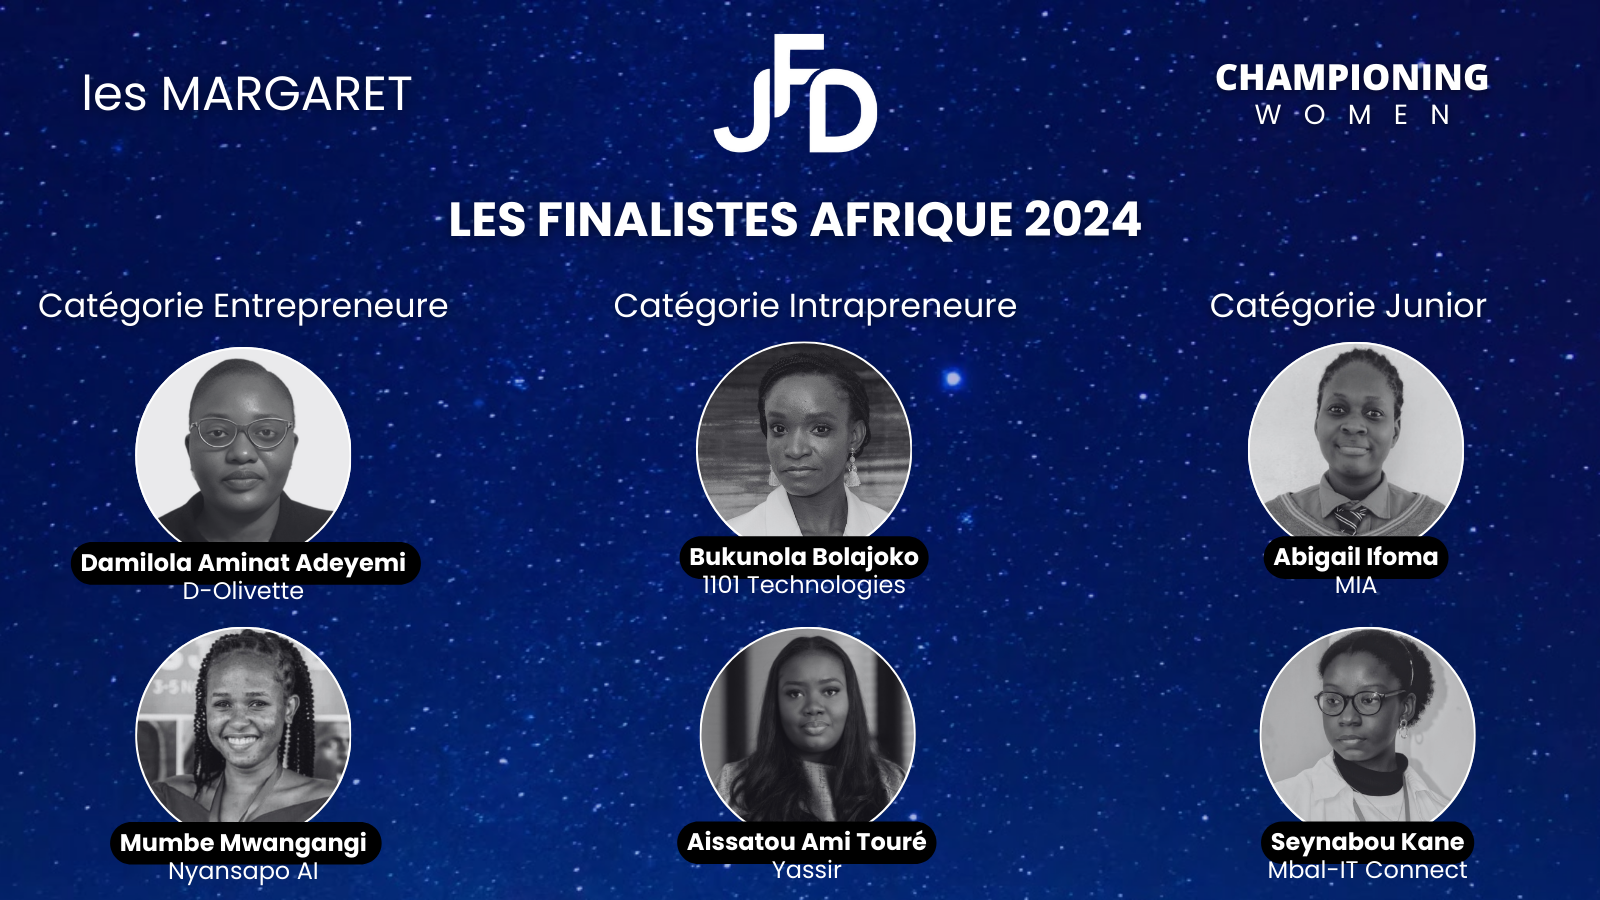 La JFD annonce les finalistes Afrique 2024 du prix les Margaret promotion “Championing Women”